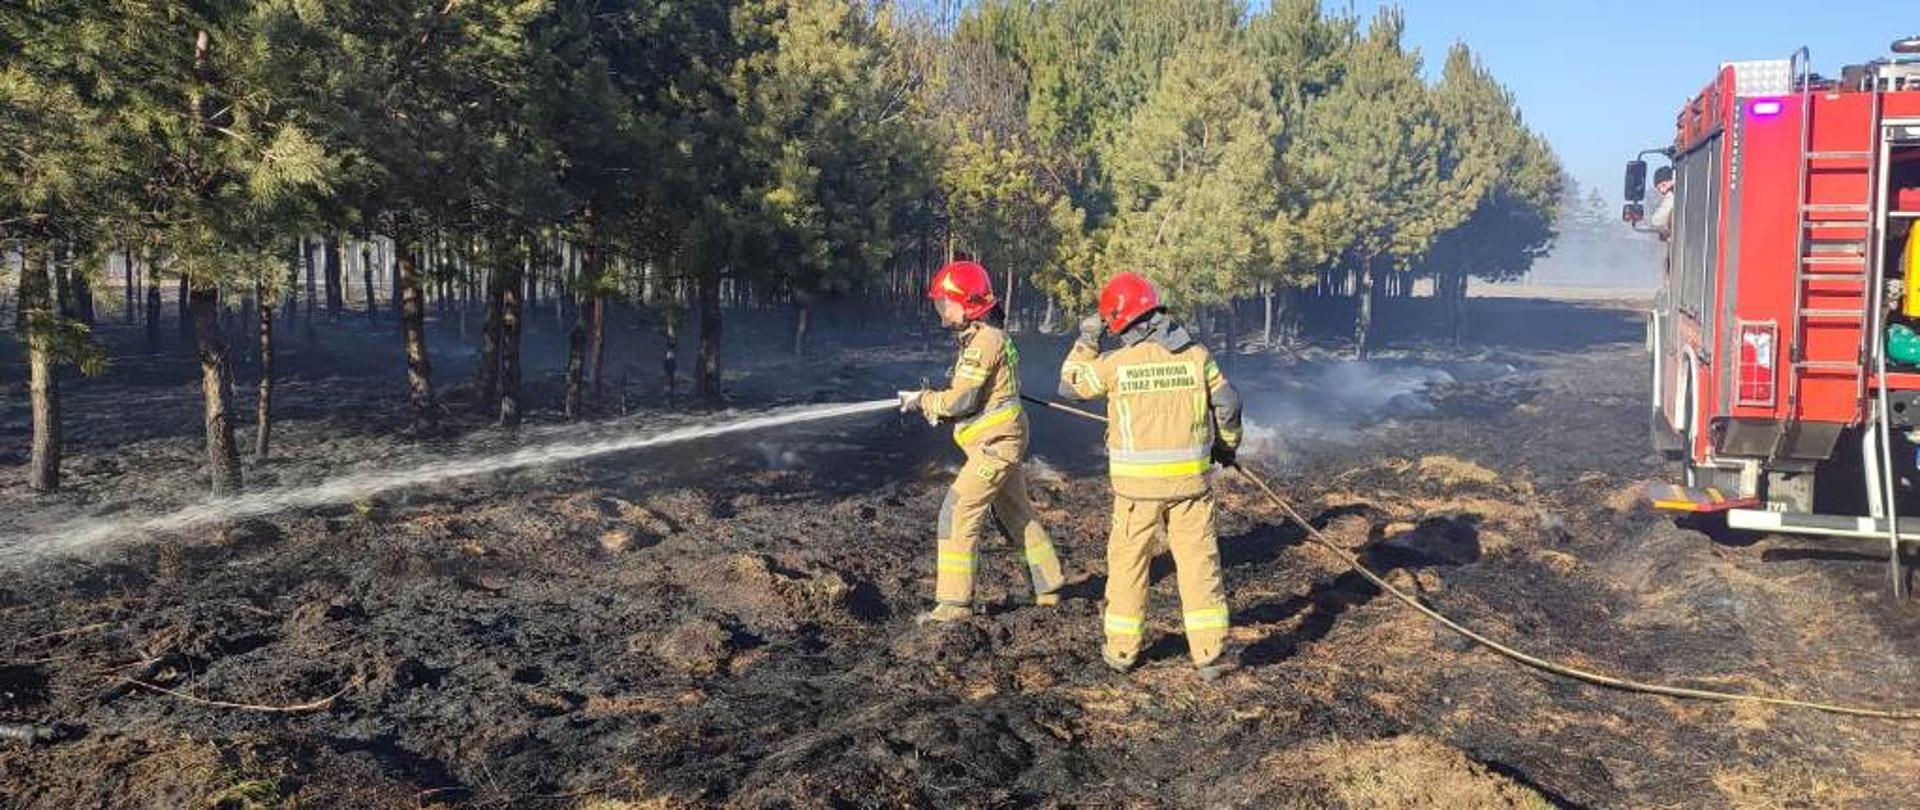 Pożarzysko, na pierwszym planie dwóch strażaków w ubraniach specjalnych przelewają teren po pożarze trawy i poszycia w lesie, z prawej strony samochód pożarniczy